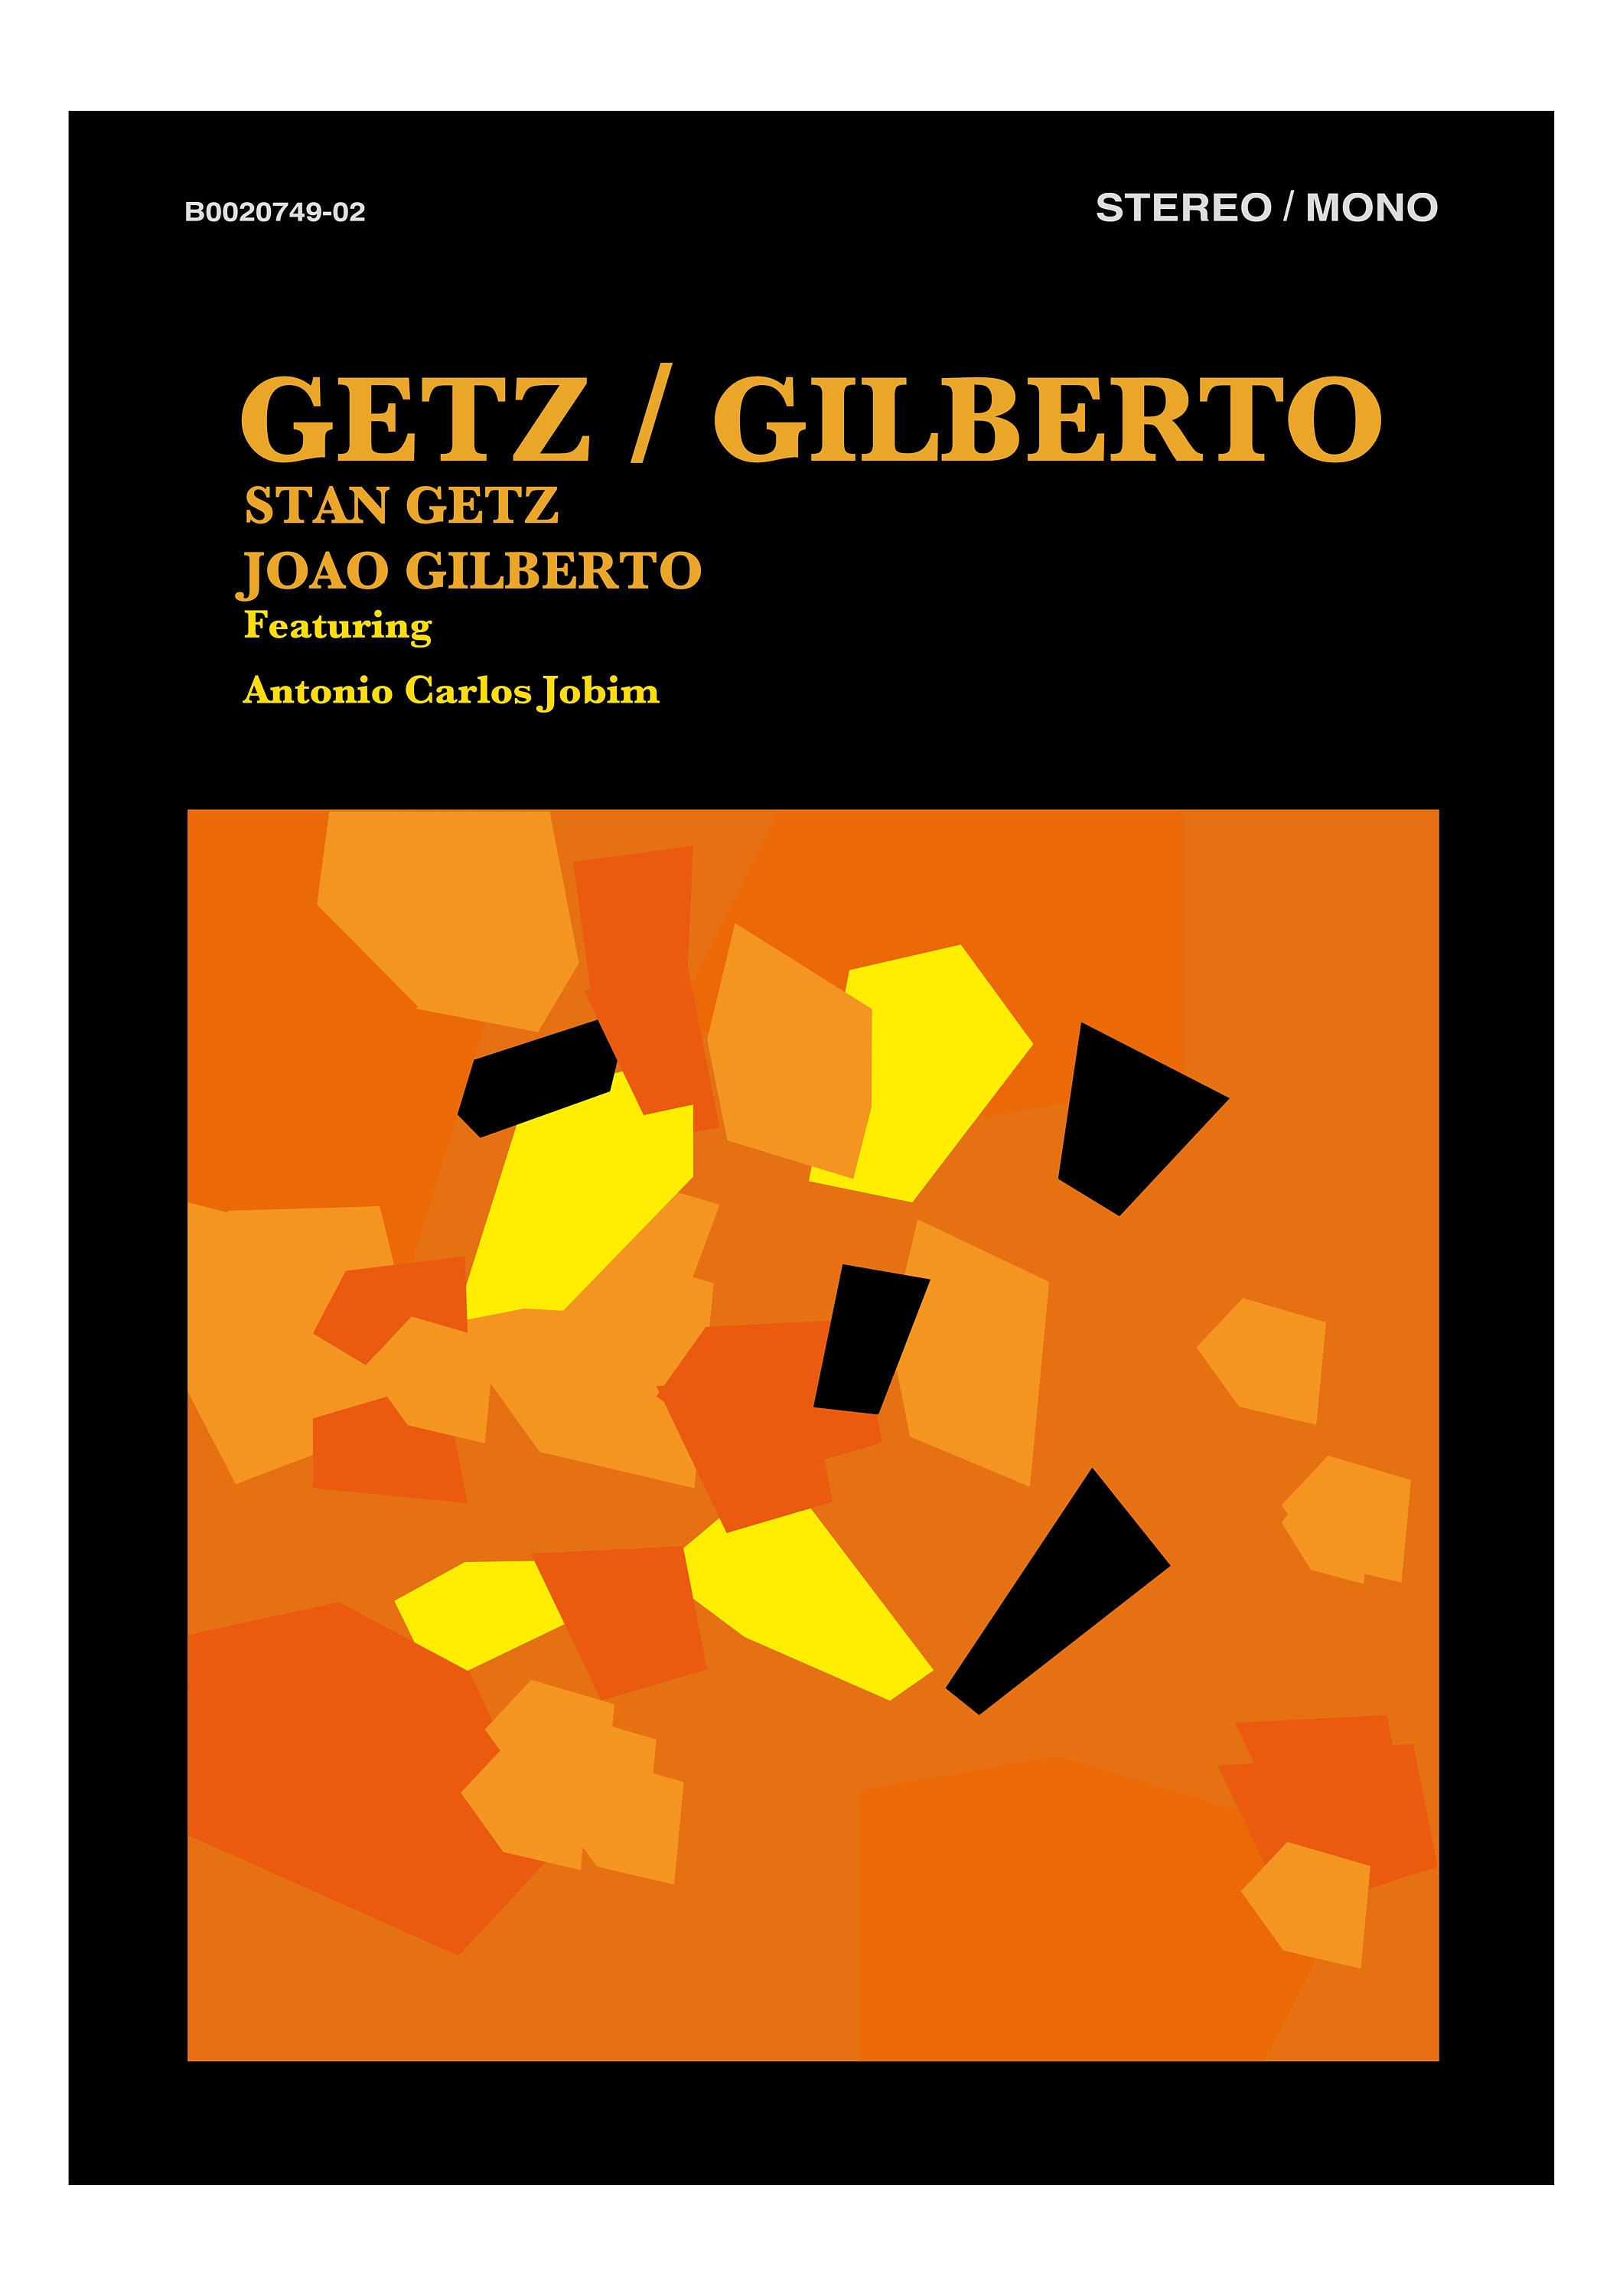 Getz / Gilberto João Gilberto and Stan Getz Verve Records | Etsy